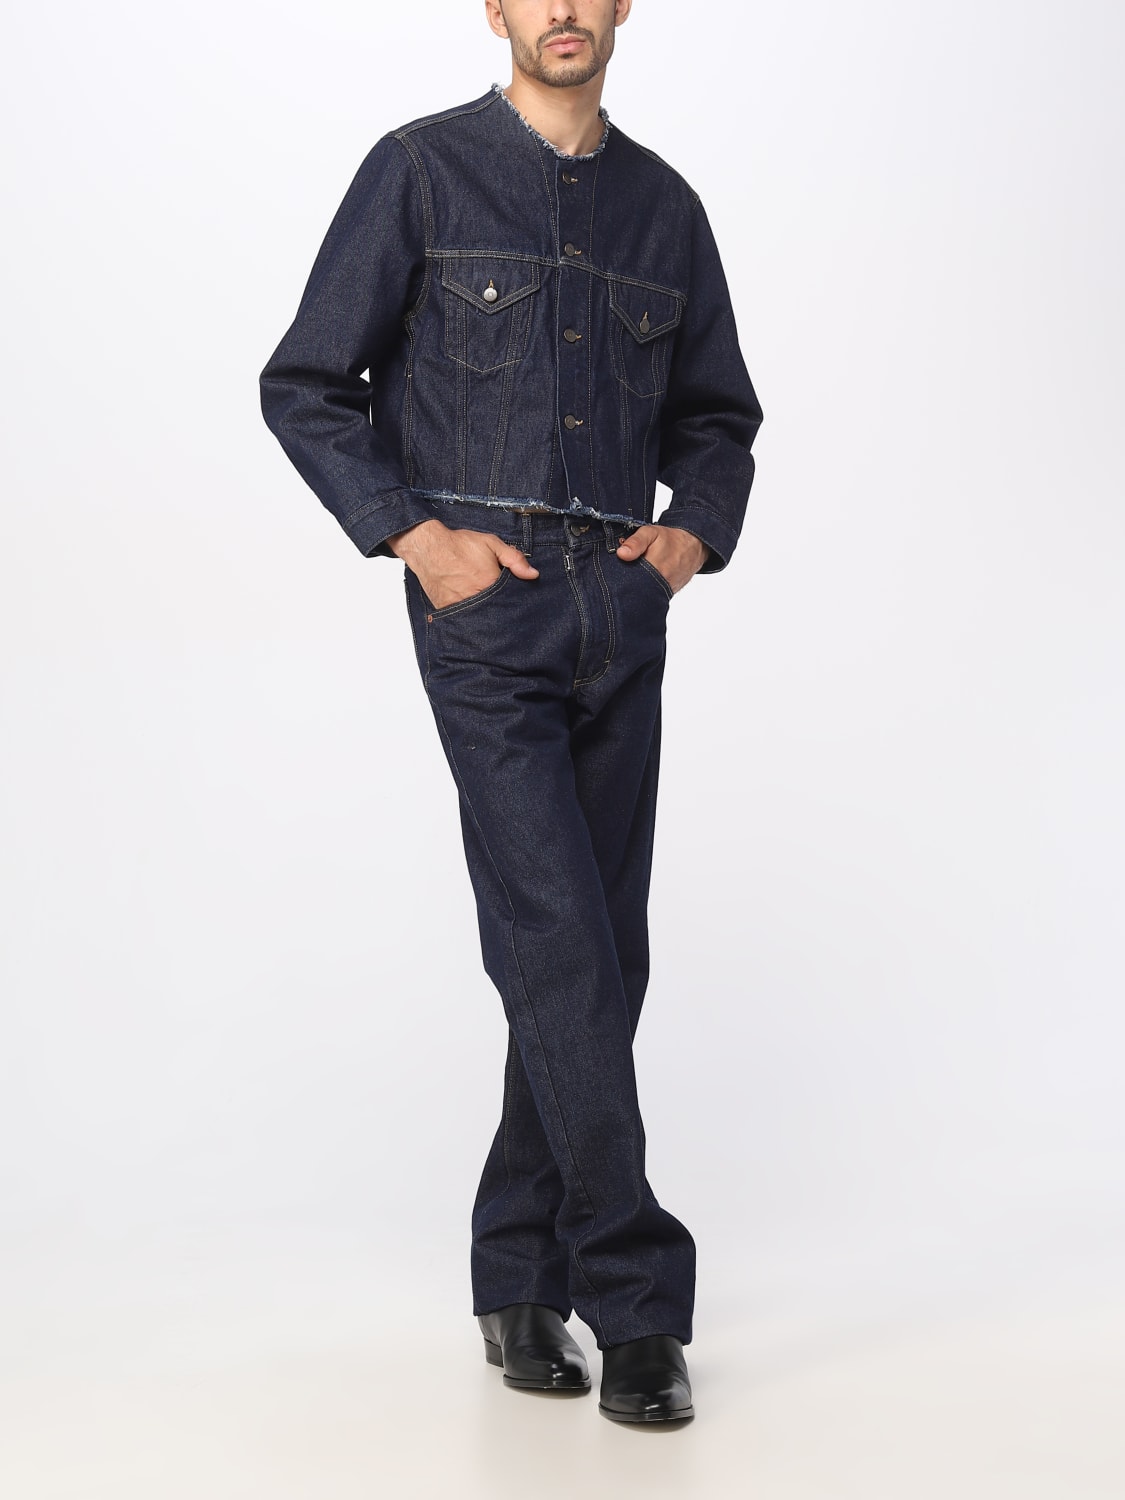 MAISON MARGIELA: jeans for man - Denim | Maison Margiela jeans ...